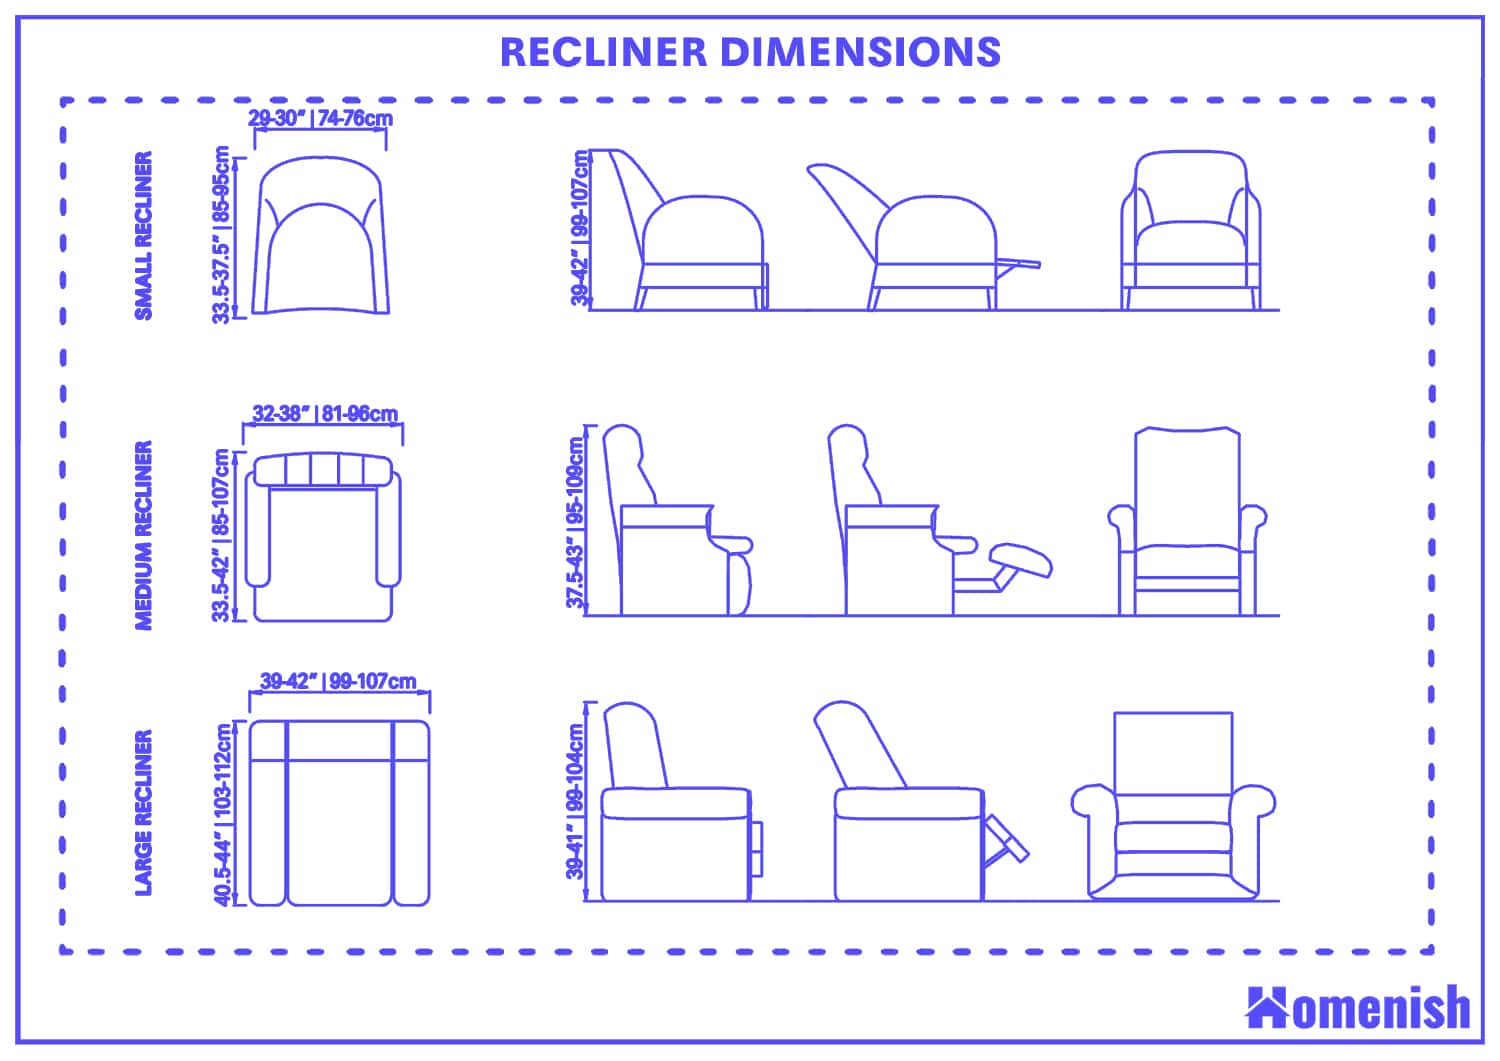 Recliner Dimensions